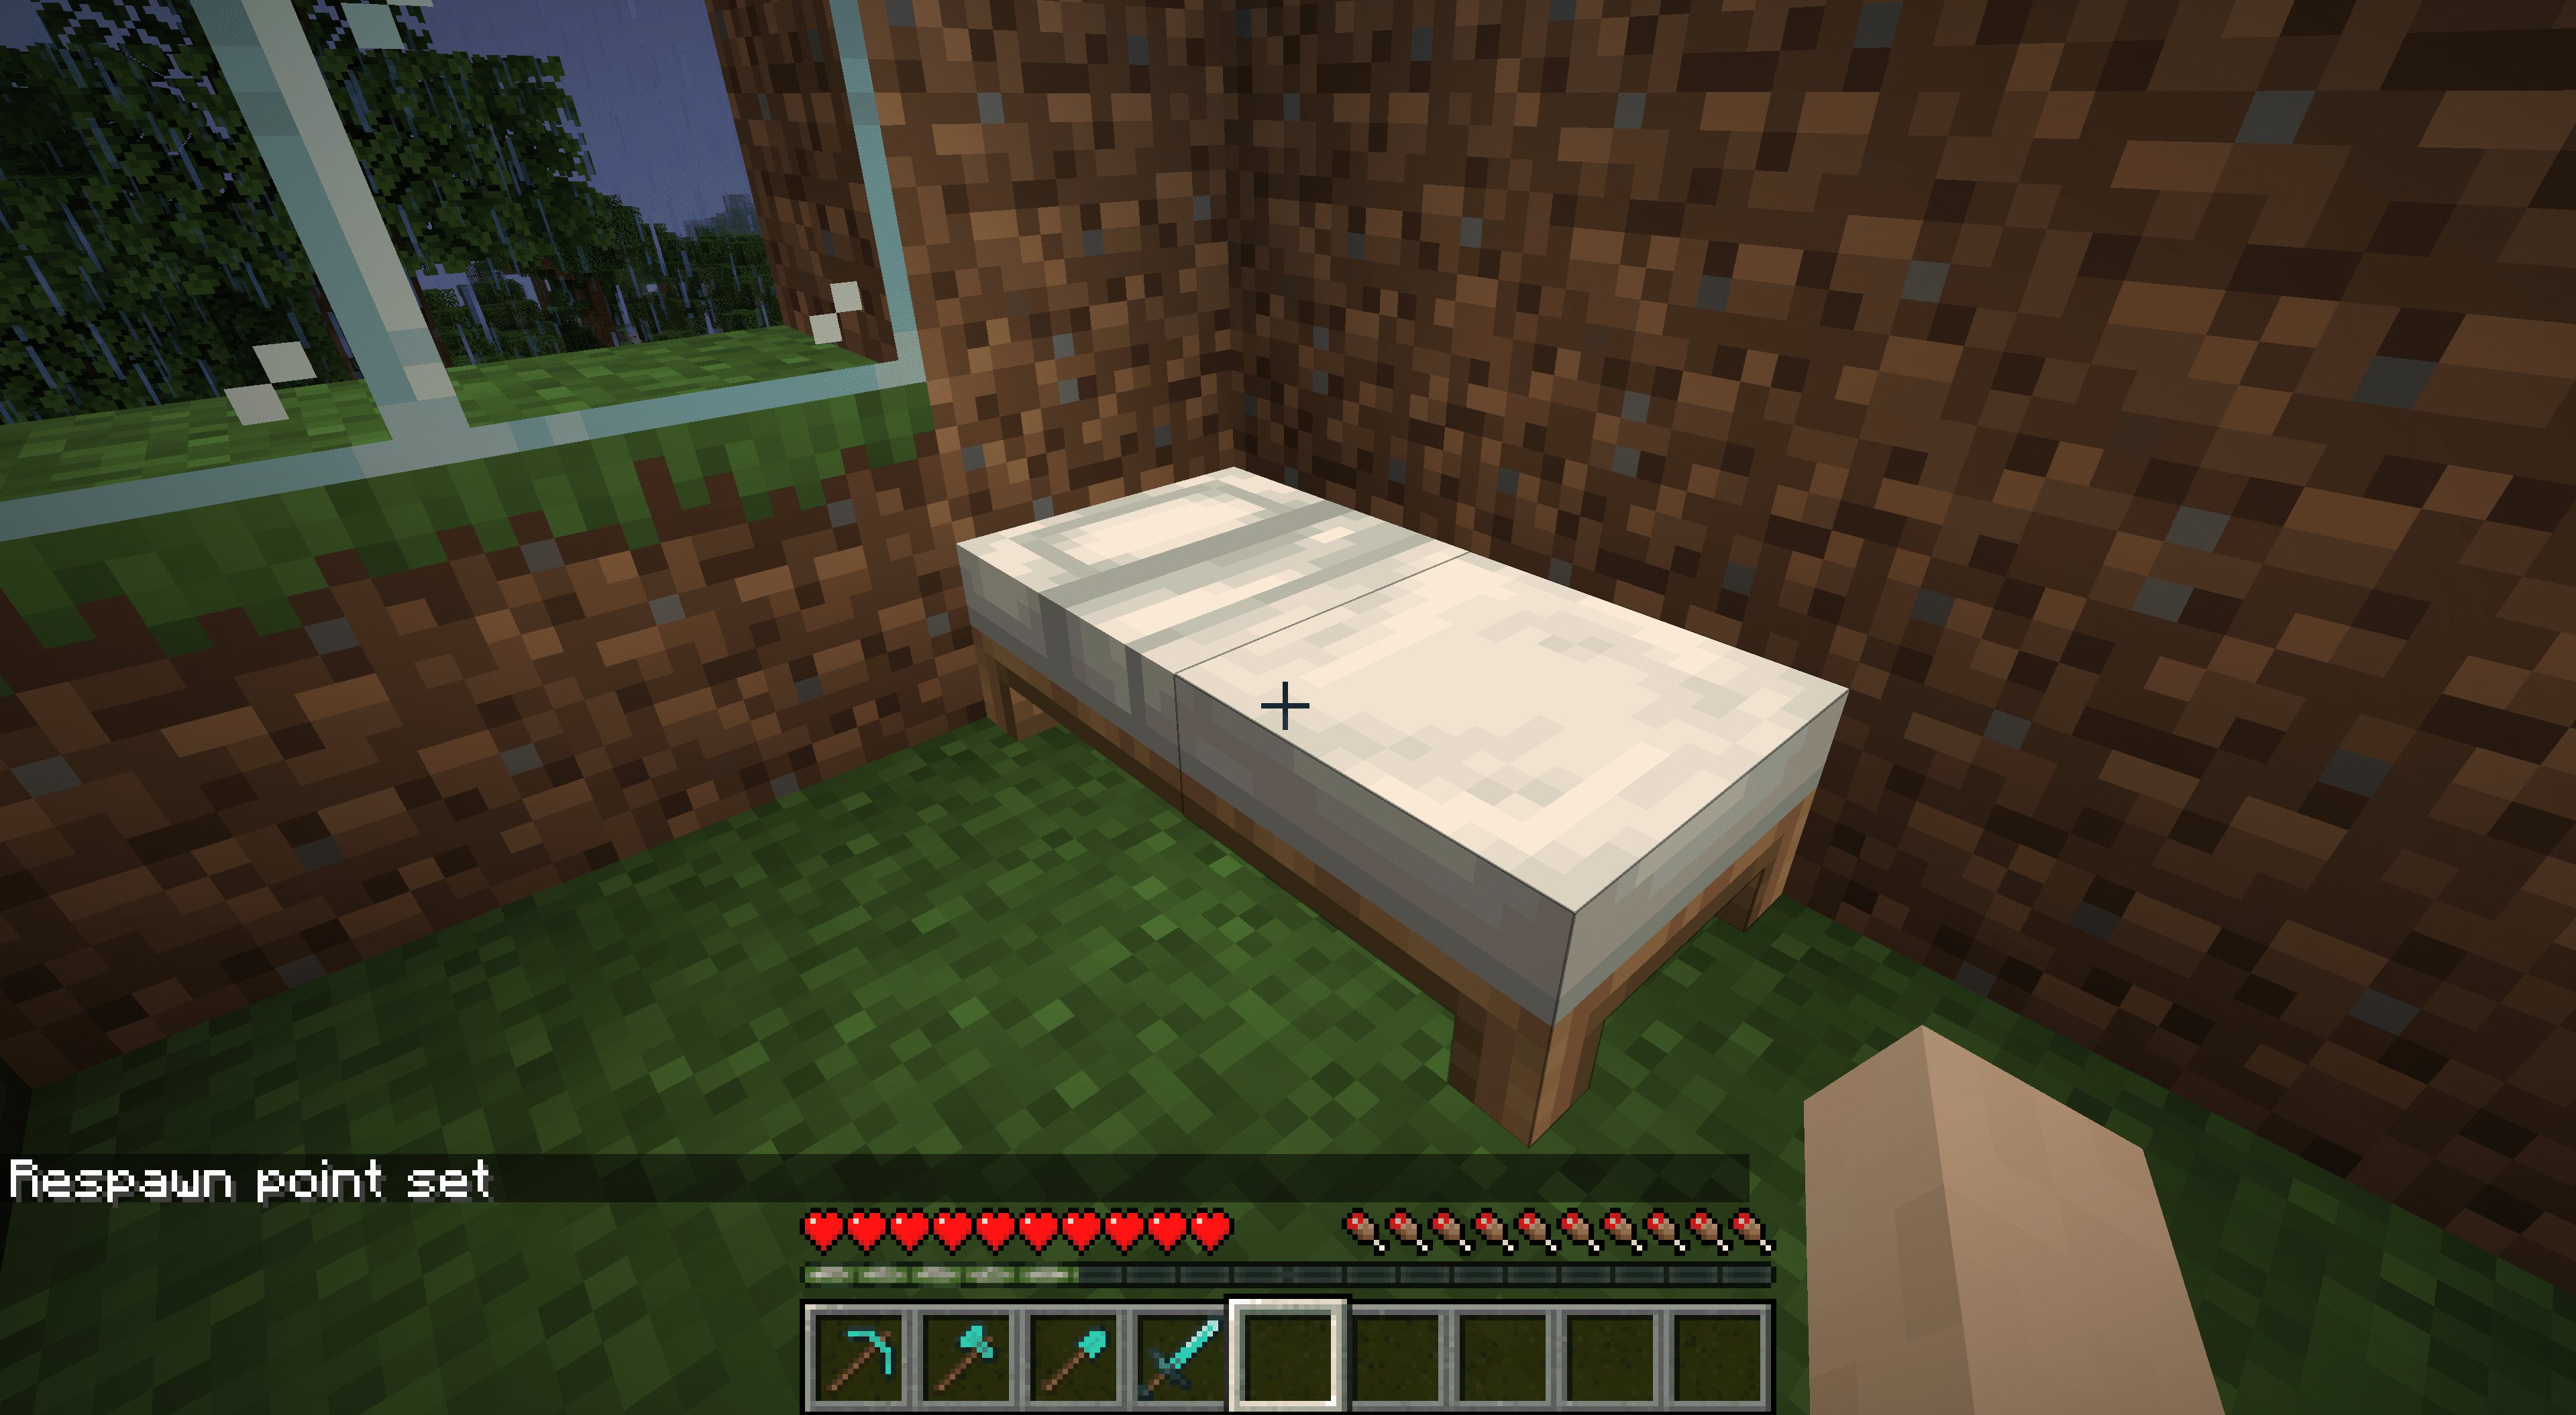 Een bed in Minecraft.